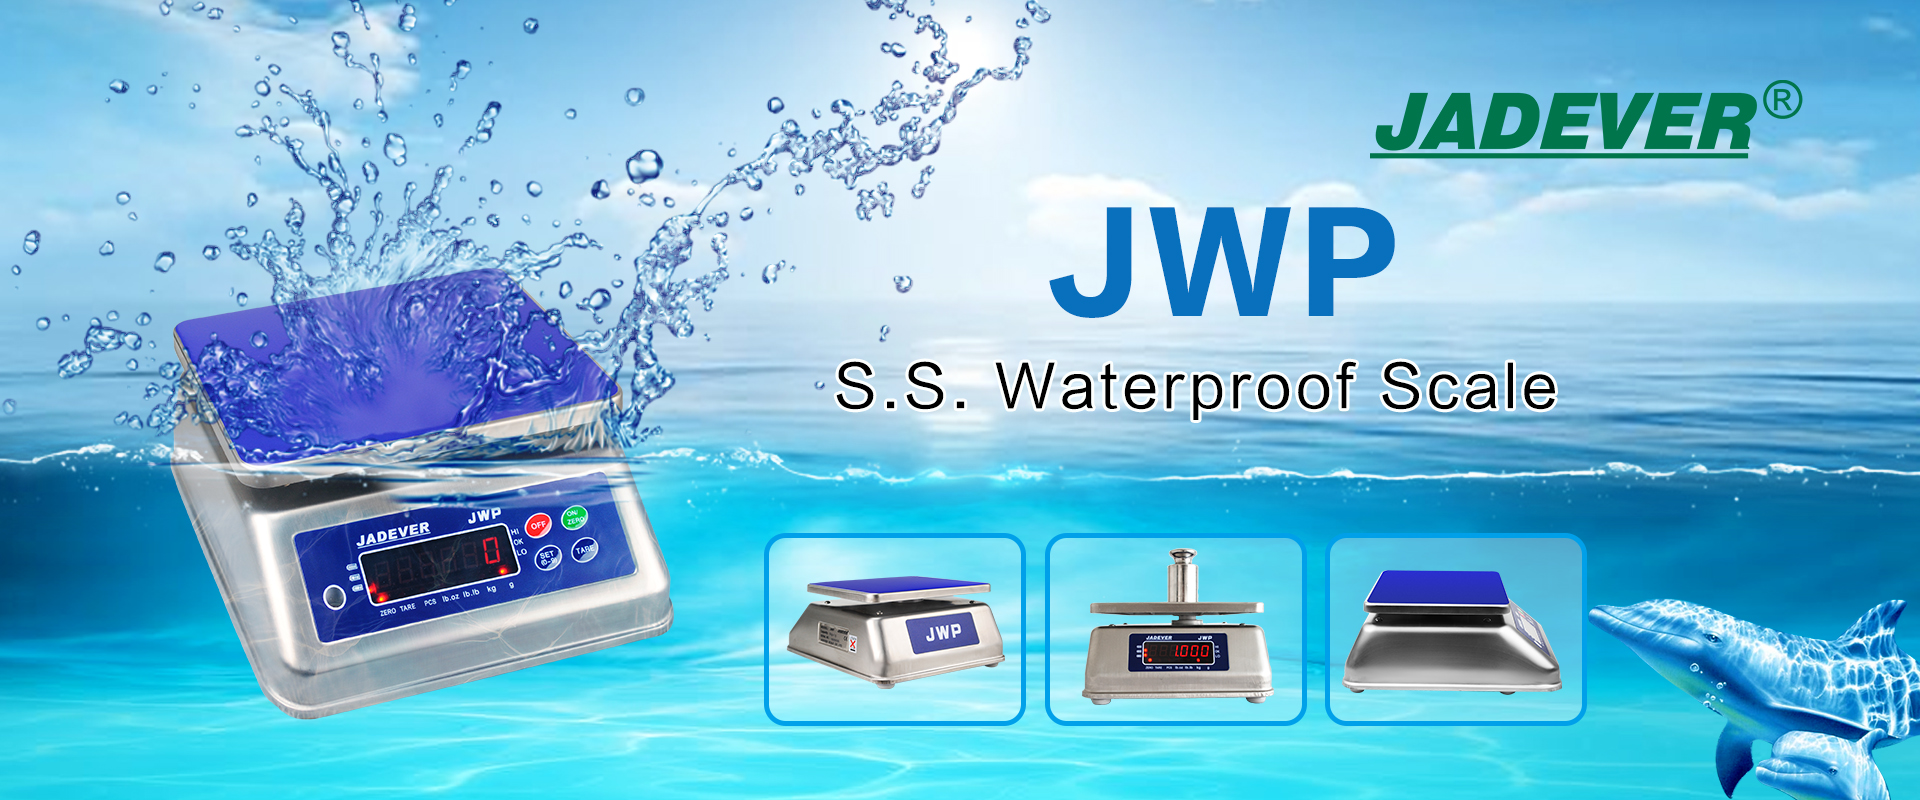 Jadever genuine waterproof weighing scale JWP